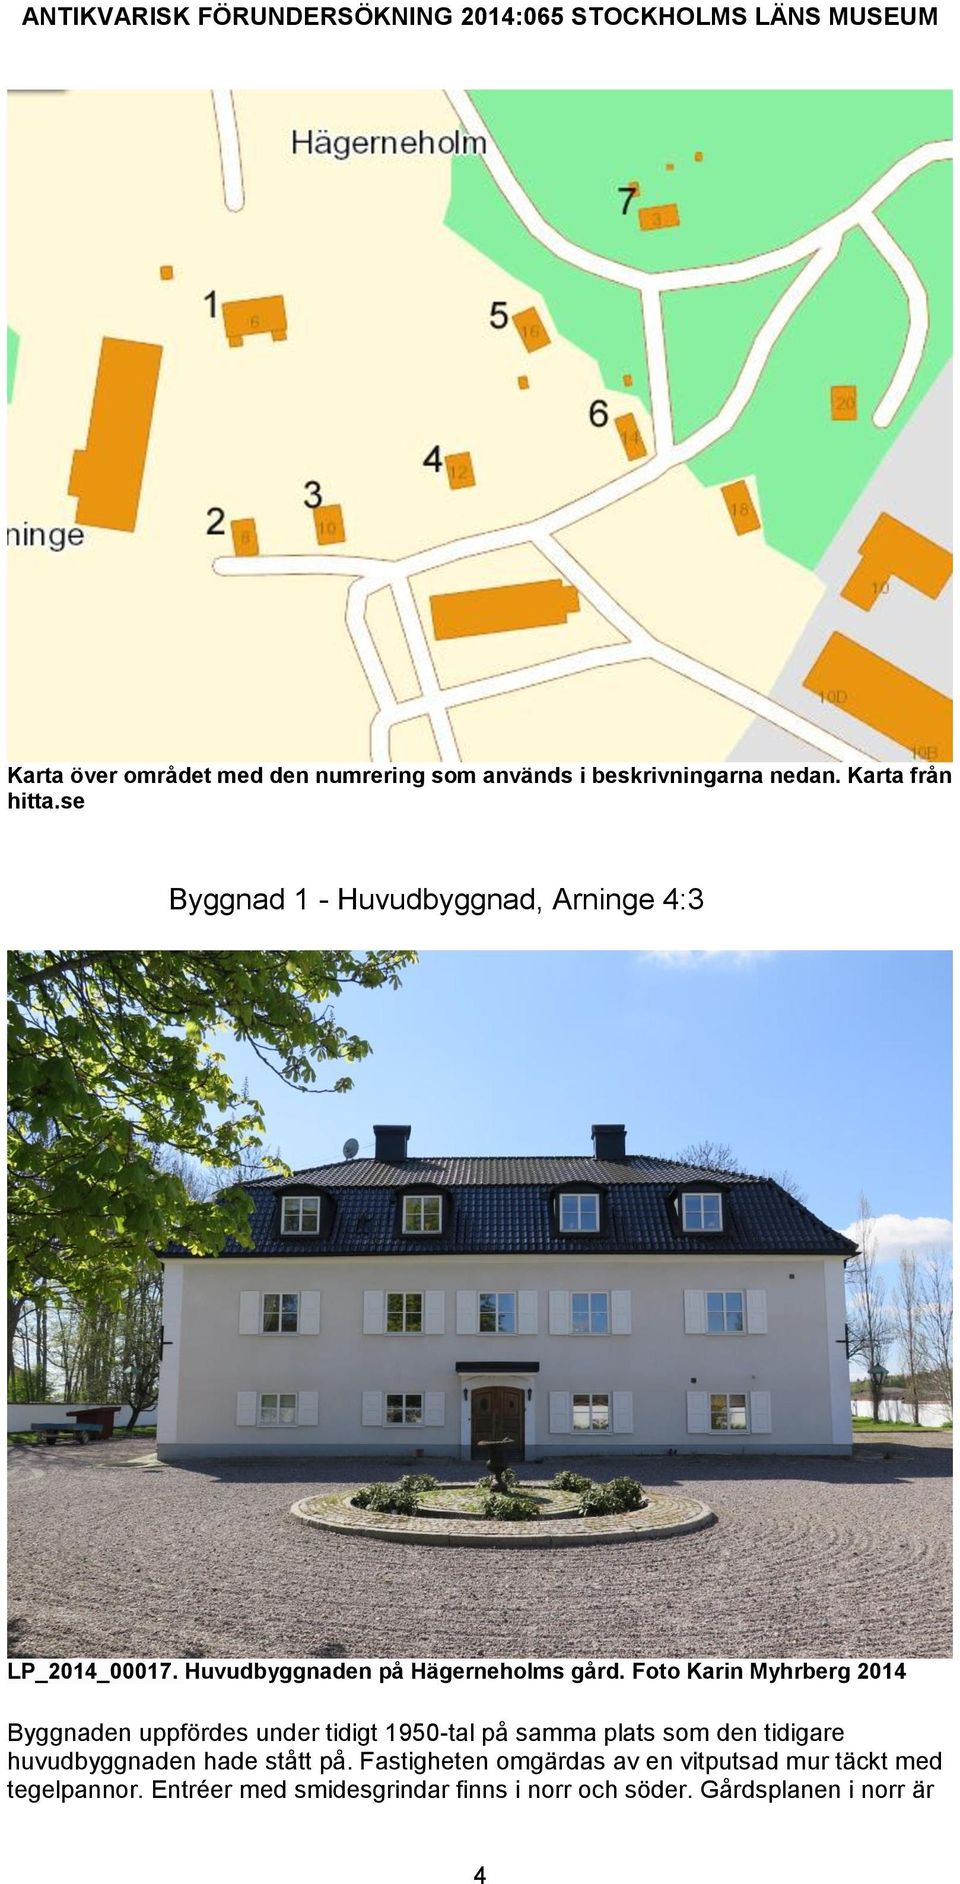 Foto Karin Myhrberg 2014 Byggnaden uppfördes under tidigt 1950-tal på samma plats som den tidigare